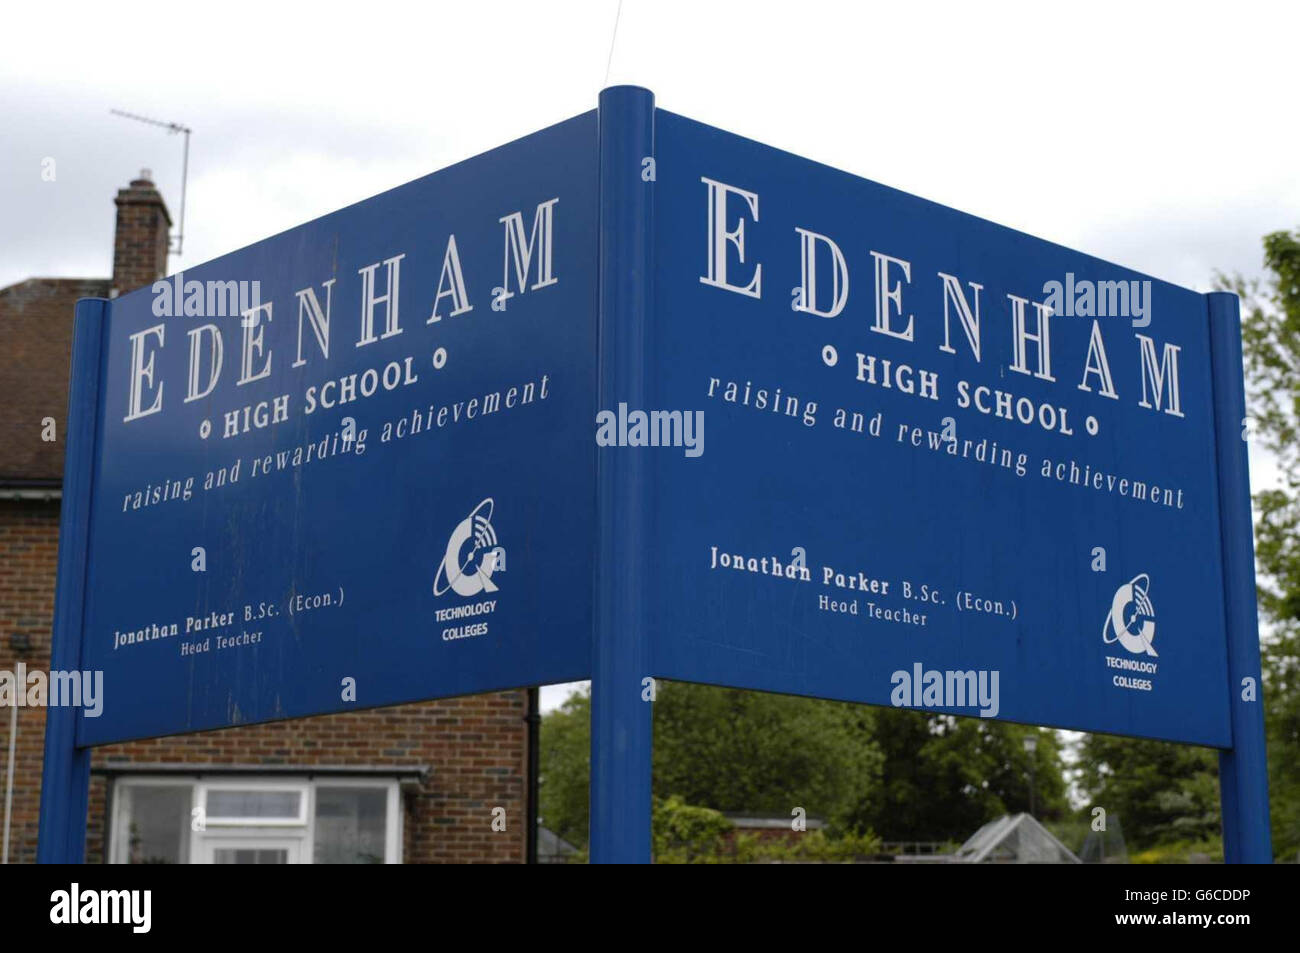 Die Edenham High School in Croydon, im Süden Londons, wurde nach Hause geschickt, nachdem ihr Lehrer gesagt hatte, dass seine Schule es sich nicht leisten könne, zeitweiliges Lehrpersonal einzustellen. Chef Jonathan Parker sagte, eine Kürzung der Mittel bedeute, dass es sich nicht leisten könne, Lehrer einzustellen, um kranke Mitarbeiter zu decken. Stockfoto